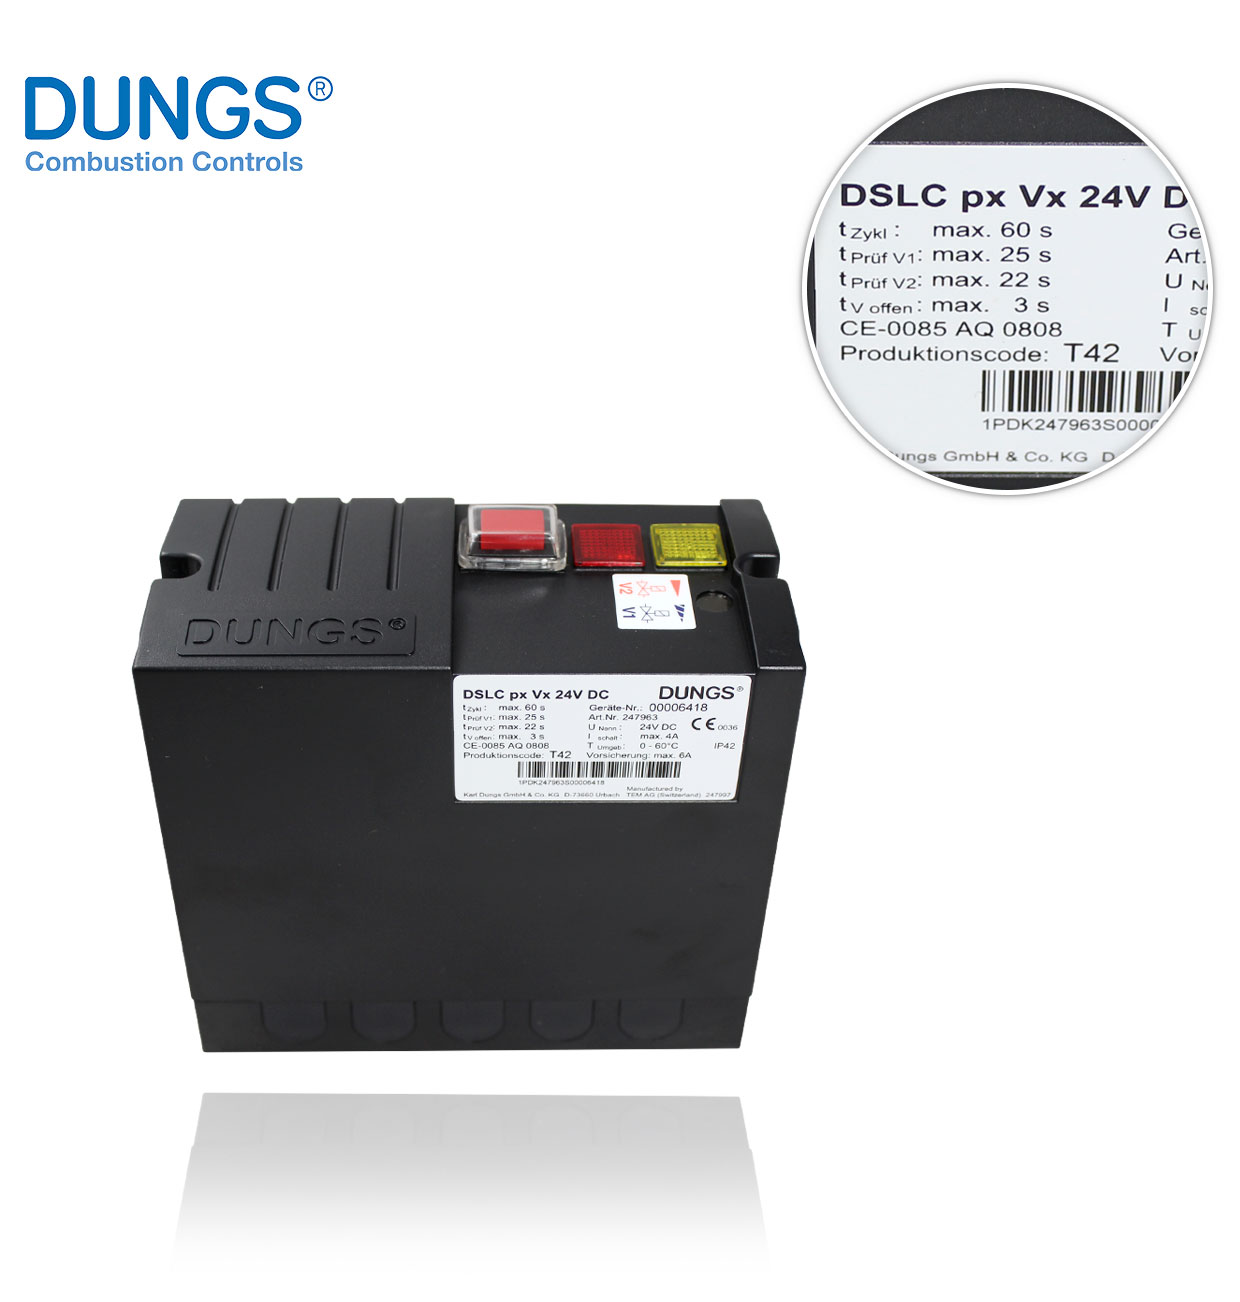 DSLC px Vx 24VDC Kpl (247963) DUNGS CONTROL BOX LEAK CONTROLLER